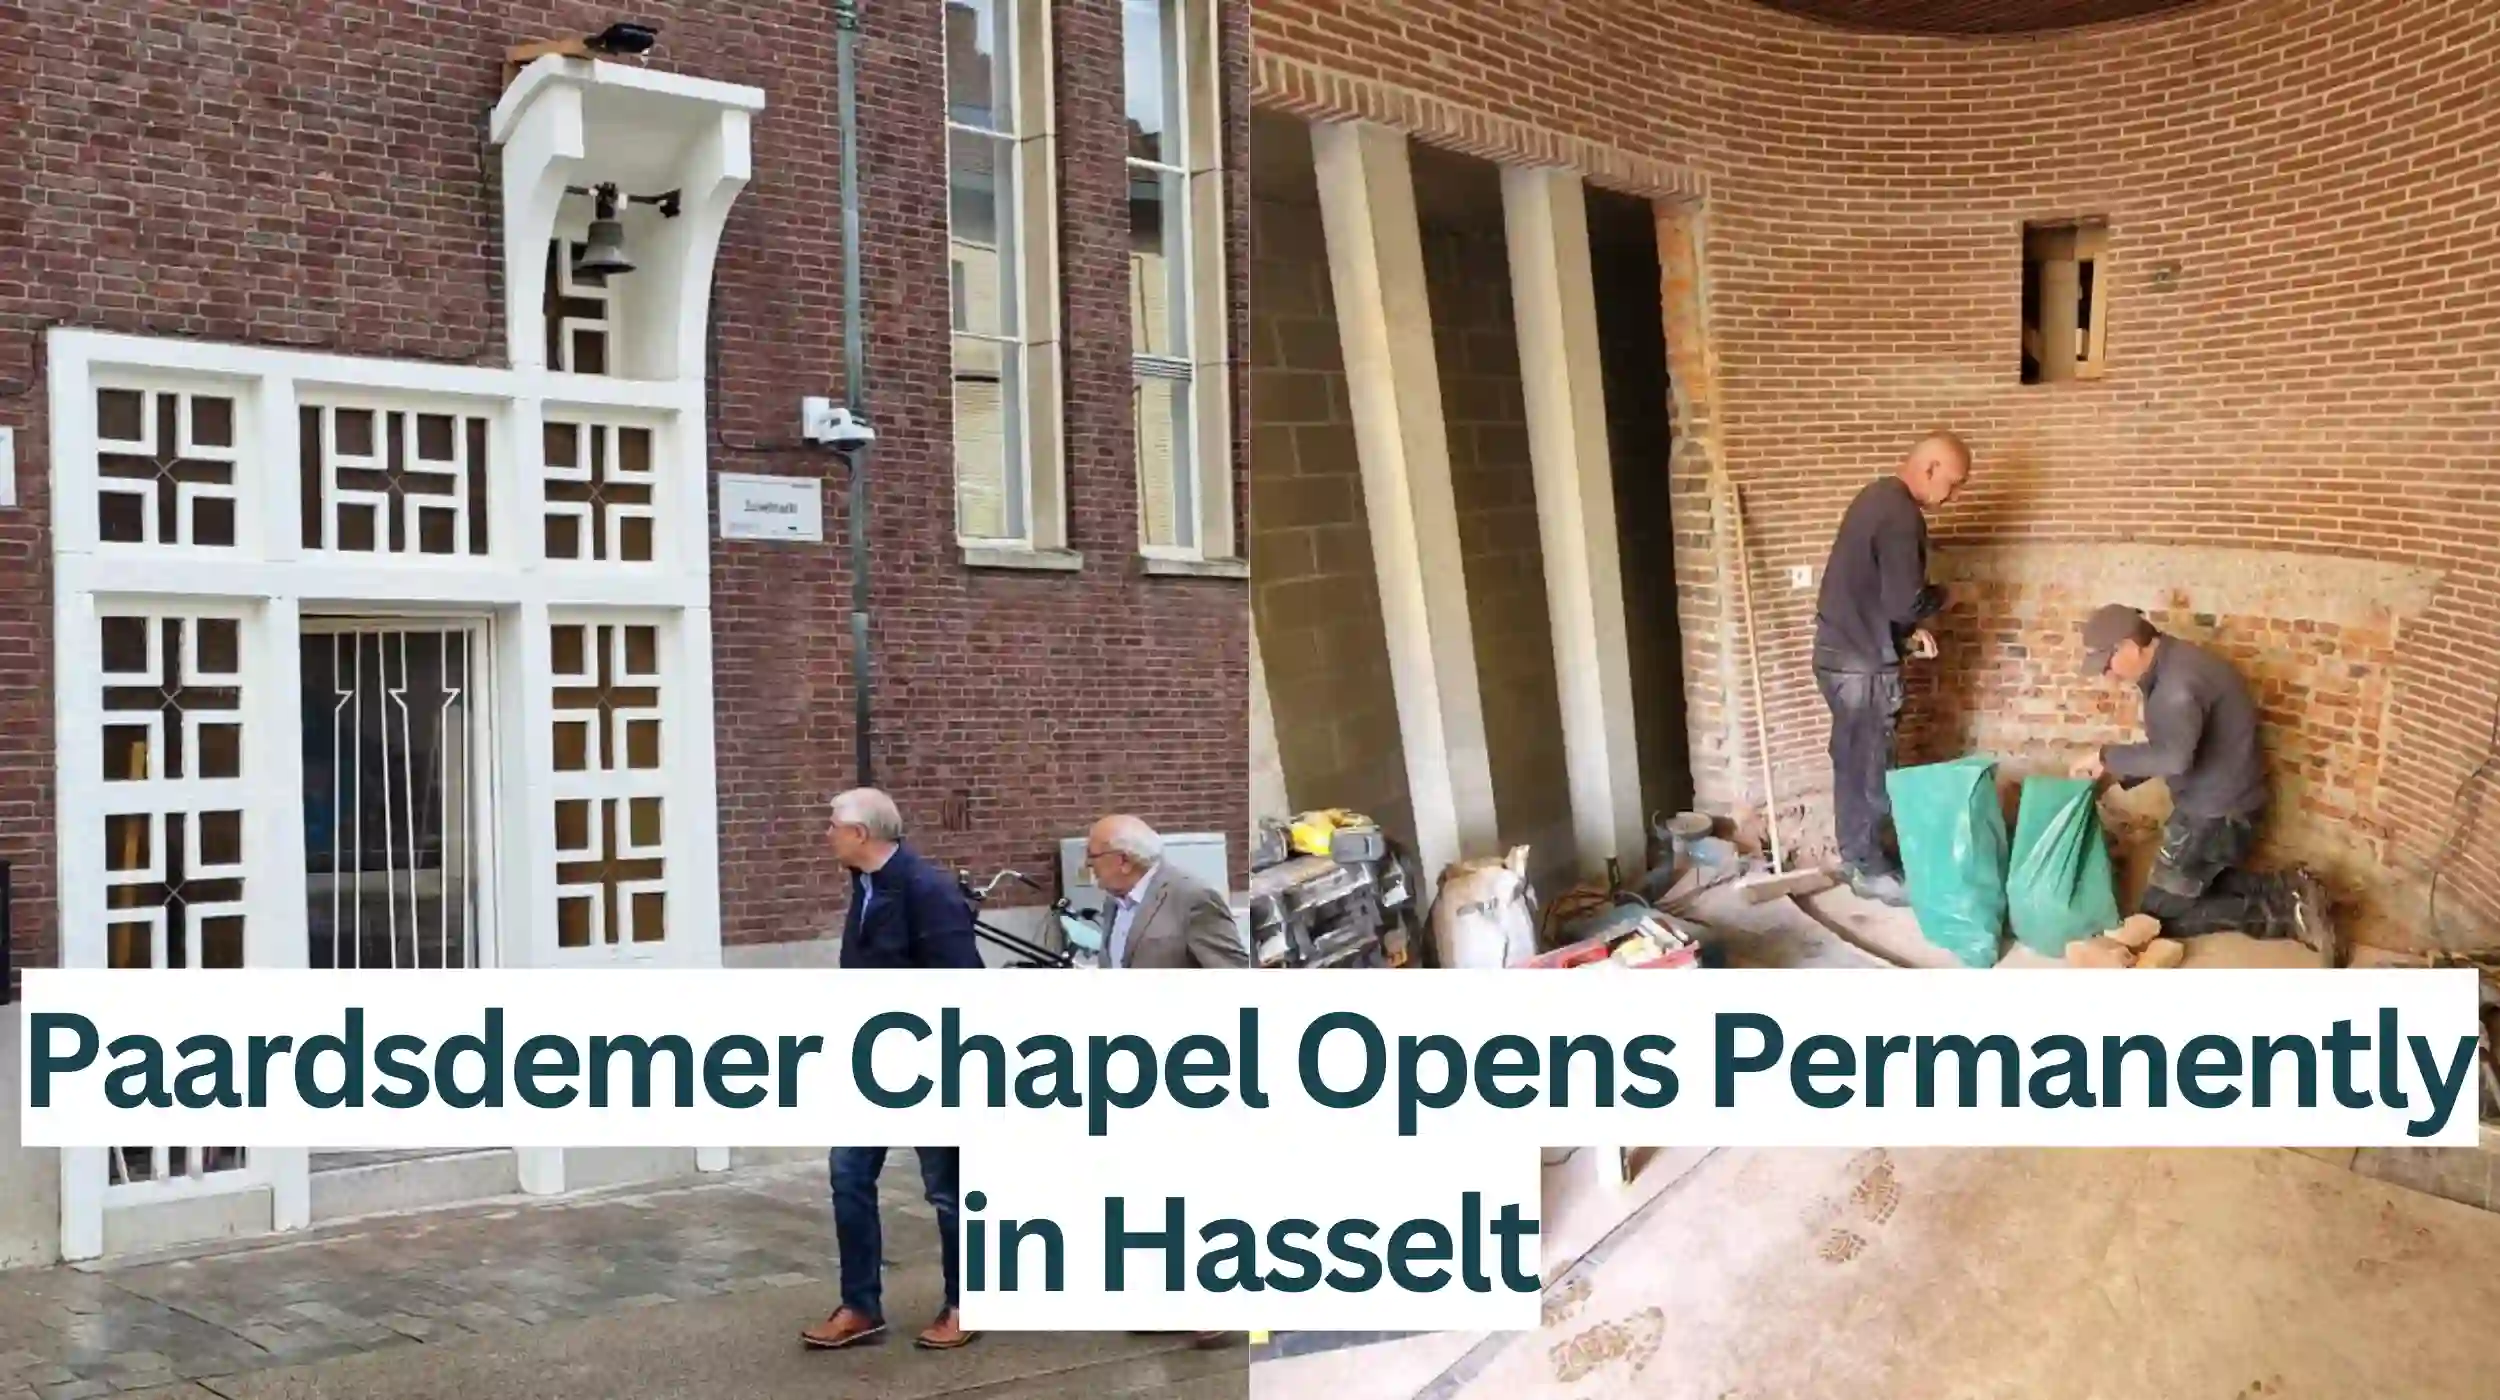 Paardsdemer-Chapel-Opens-Permanently-in-Hasselt